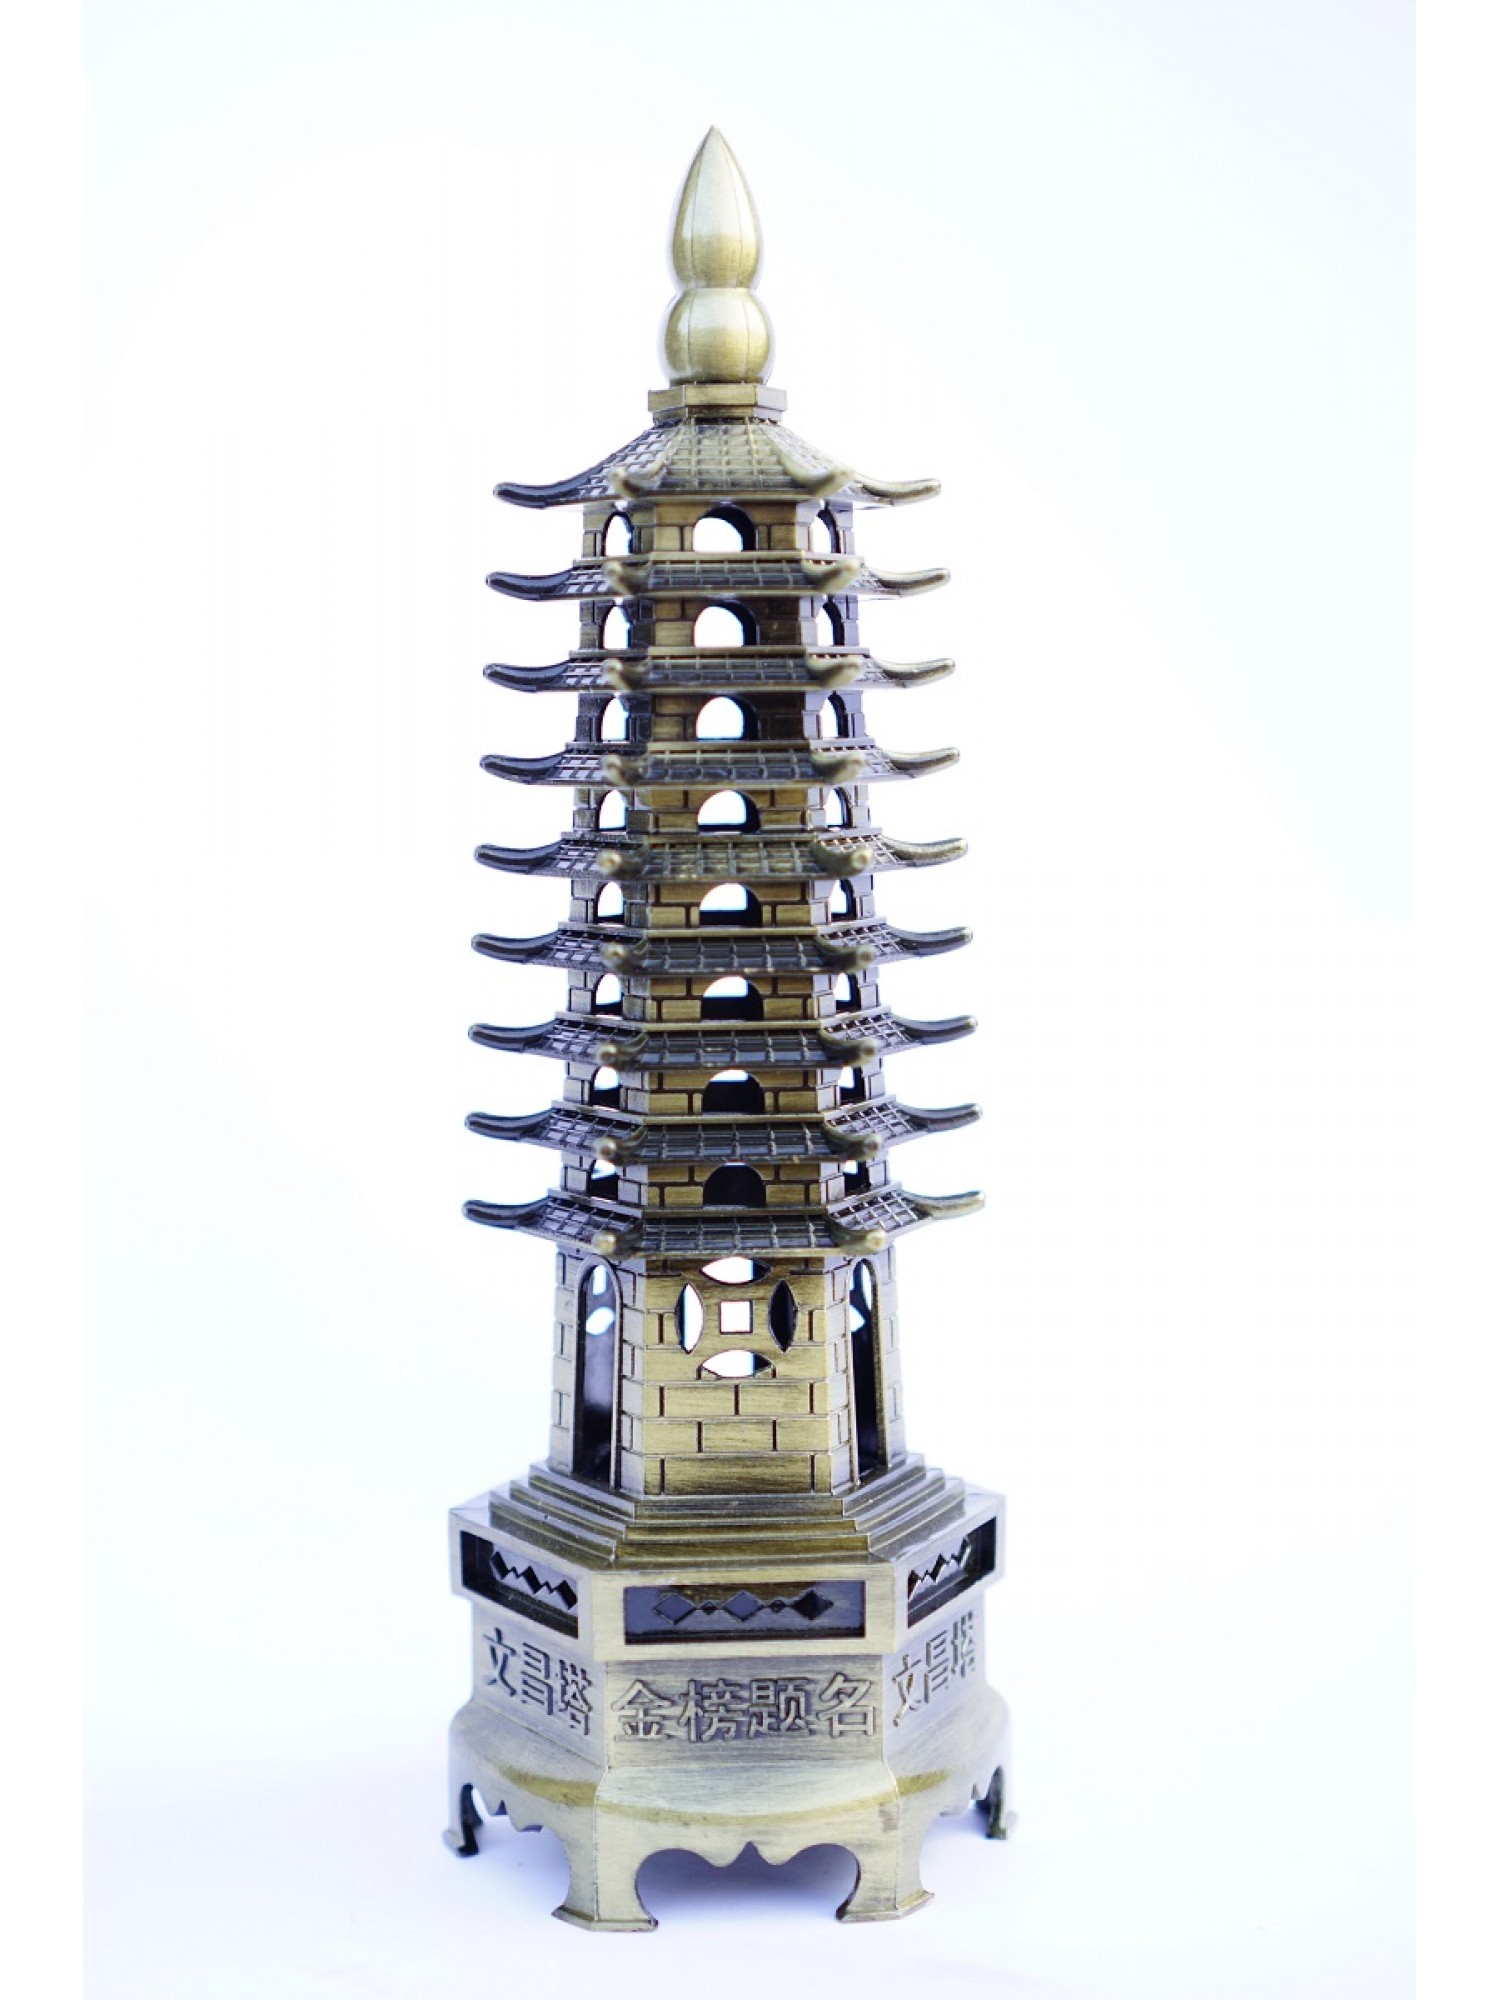 Статуэтка "Пагода 9-уровневая" дарует мудрость и помогает достичь высокого академического статуса.